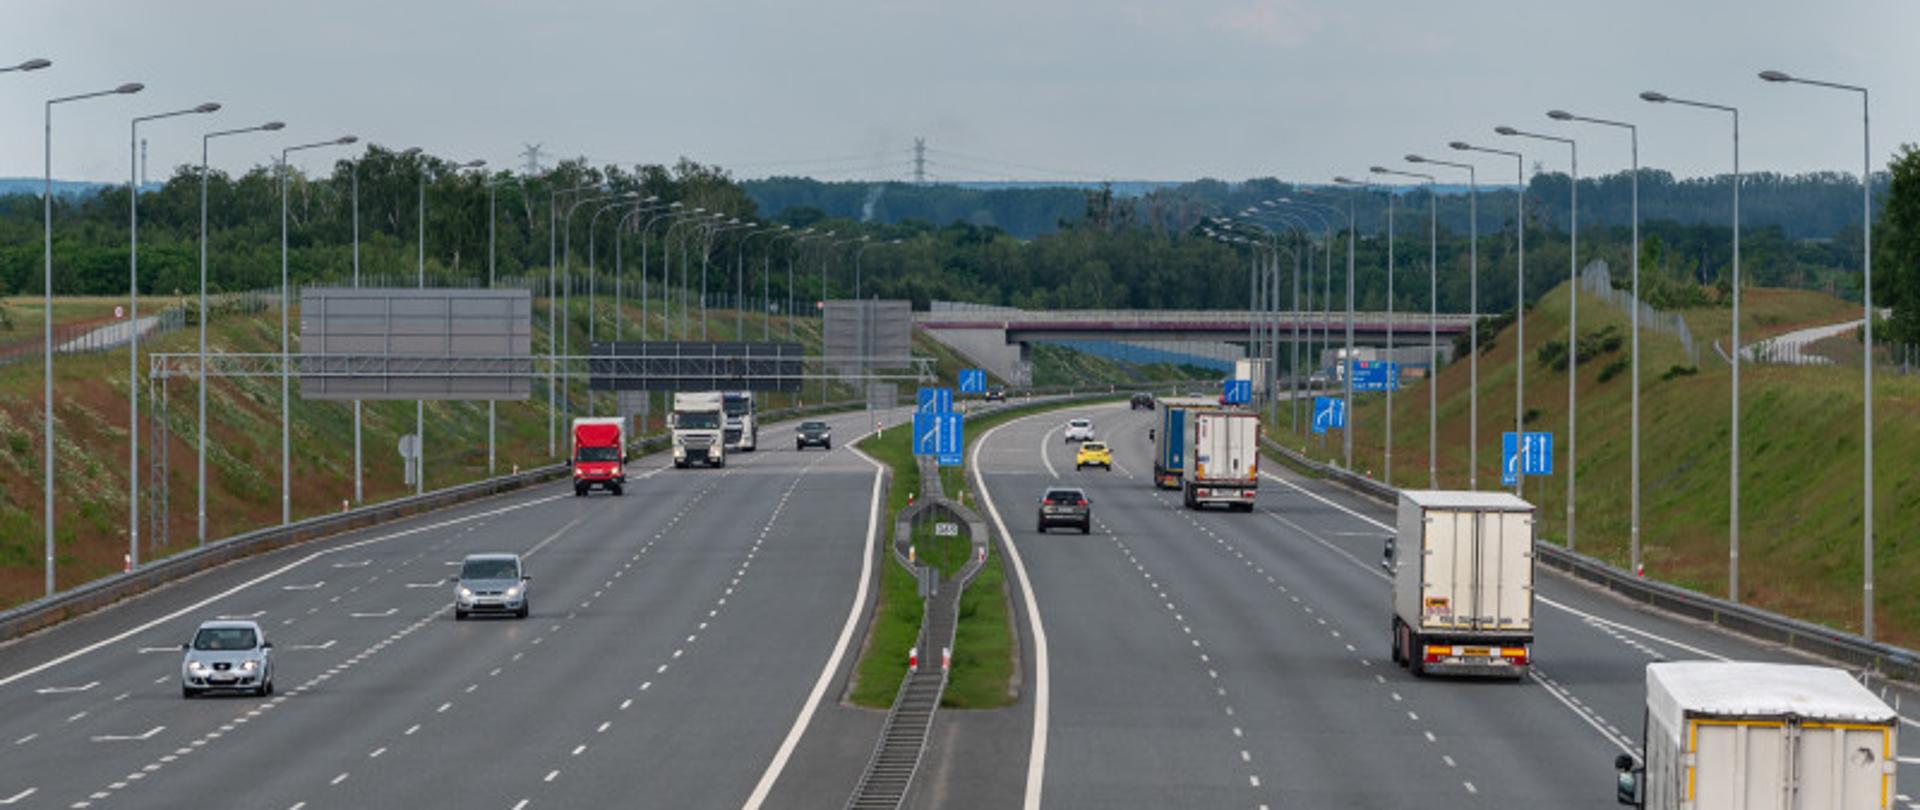 Autostrada A2 - Łódź Północ. Widok z wiaduktu. Widoczny ruch pojazdów na trasie.